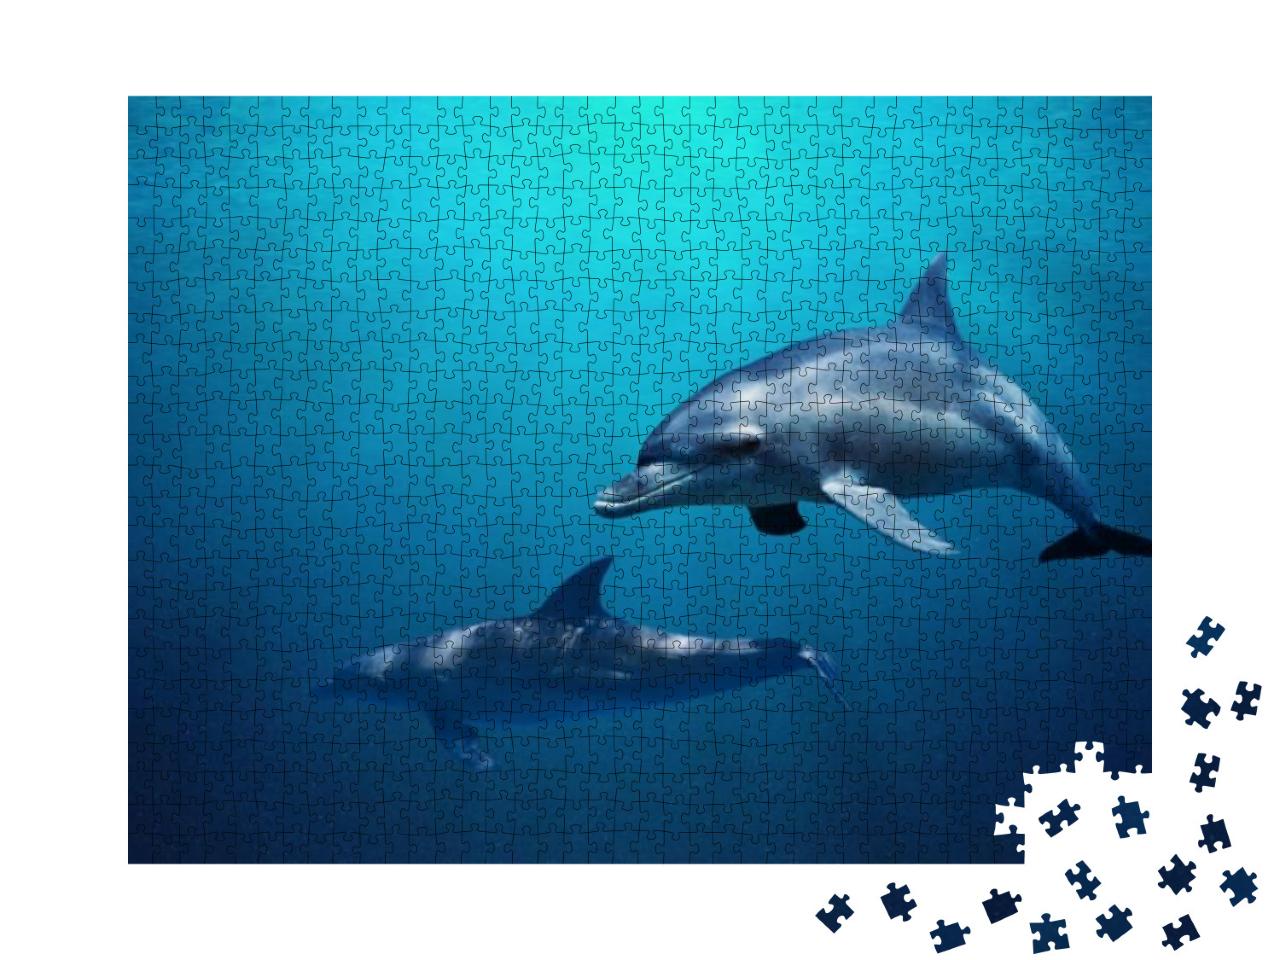 Puzzle 1000 Teile „Zwei Delfine schwimmen durch blaues Wasser“